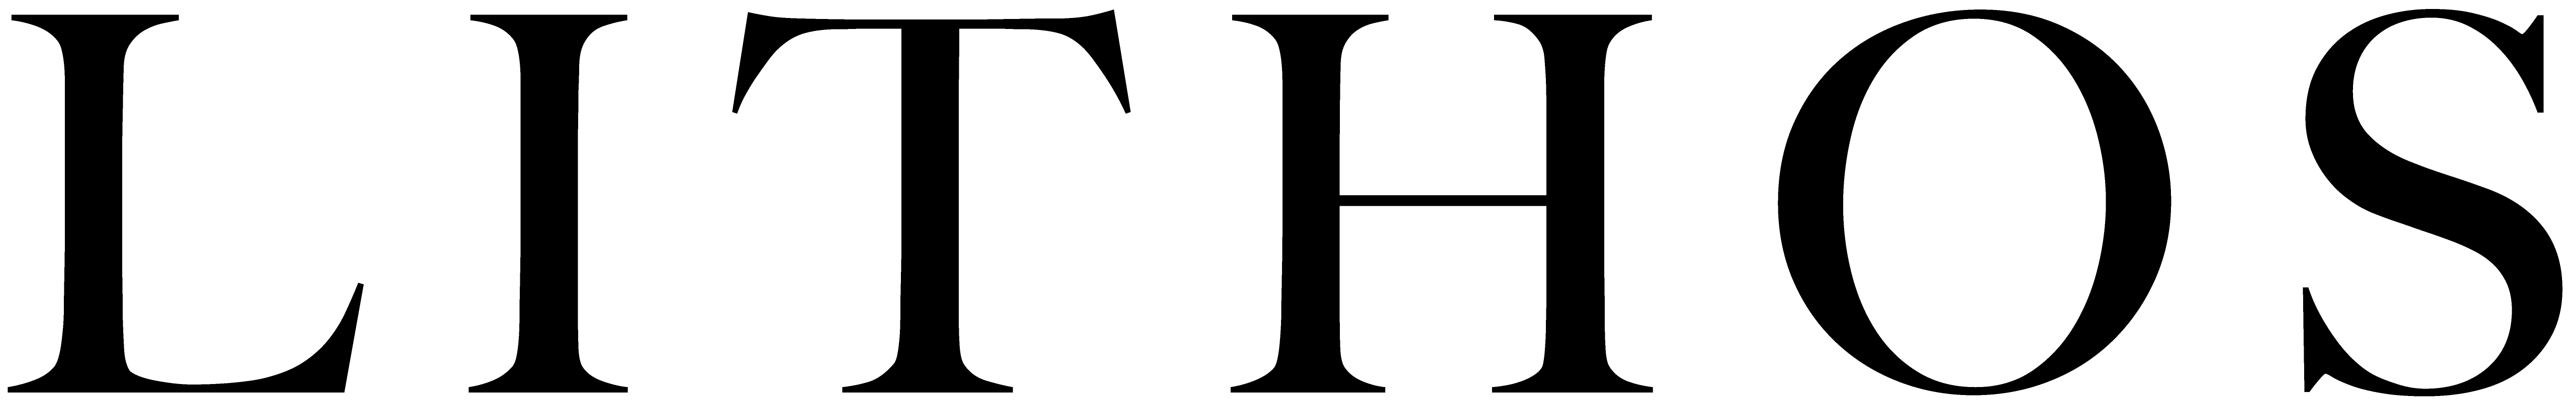 港区のキャバクラ「LITHOS」のロゴ